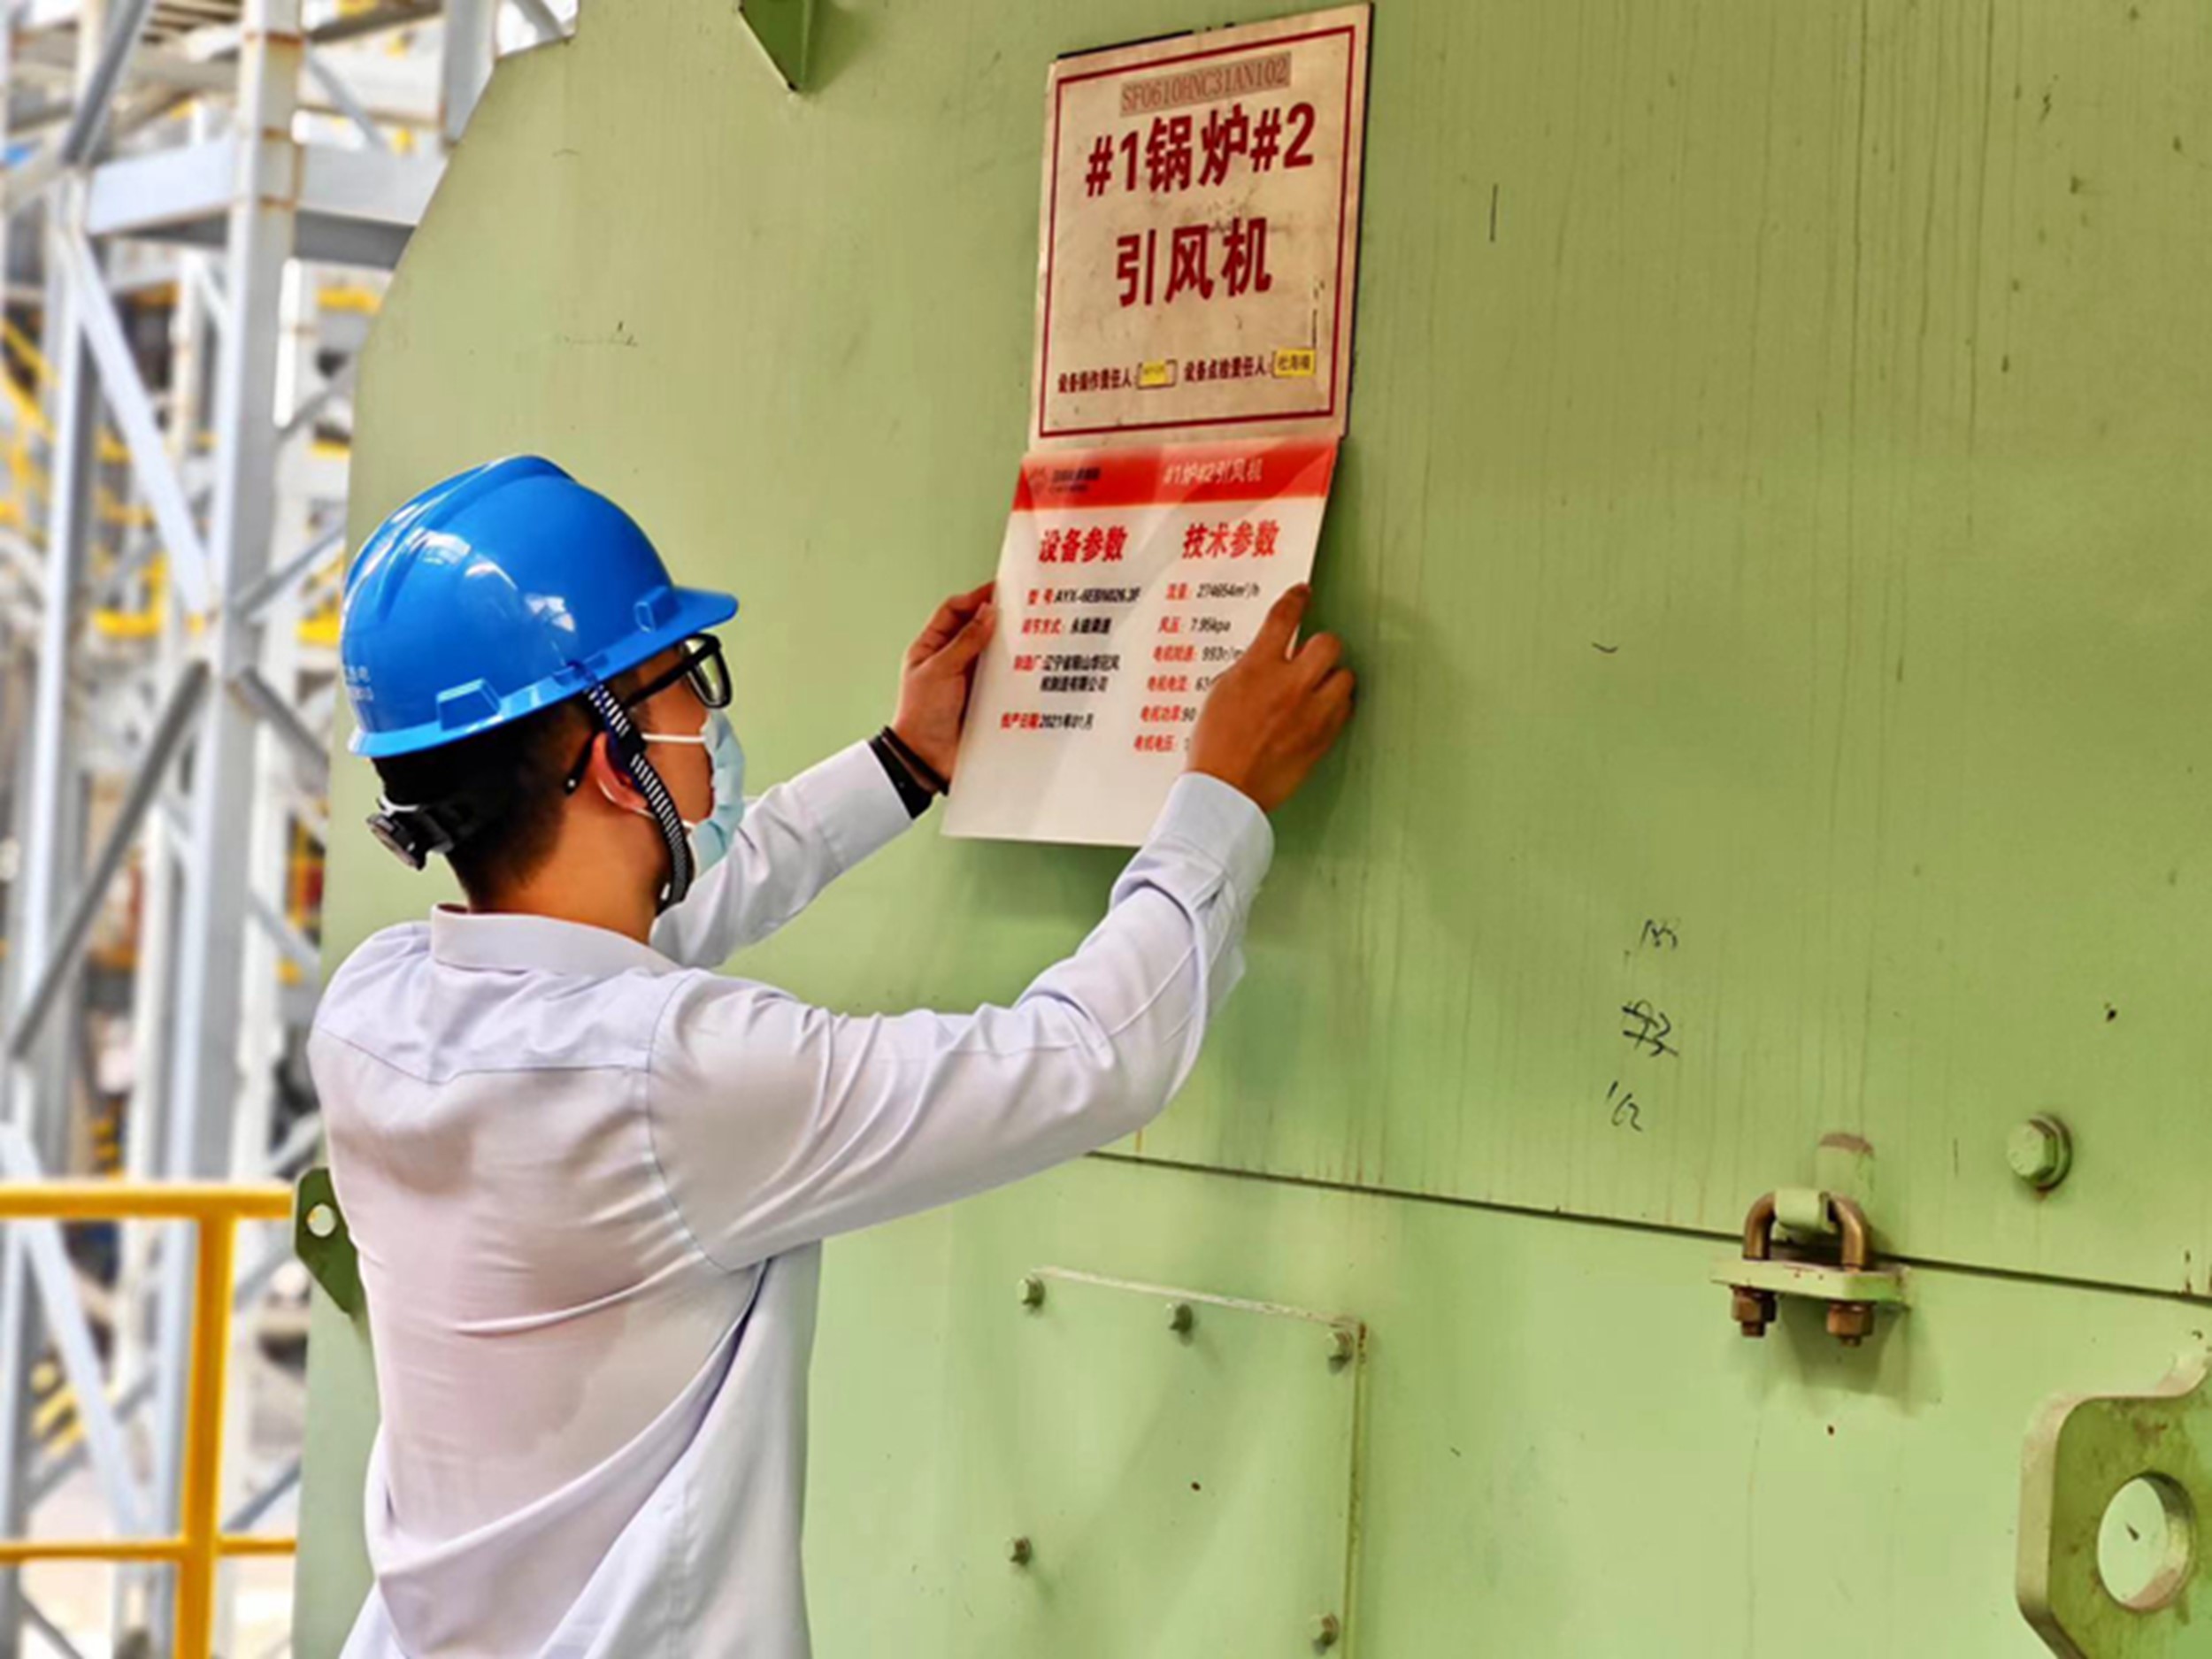 国能晋江热电公司开展设备主参数展示牌悬挂工作